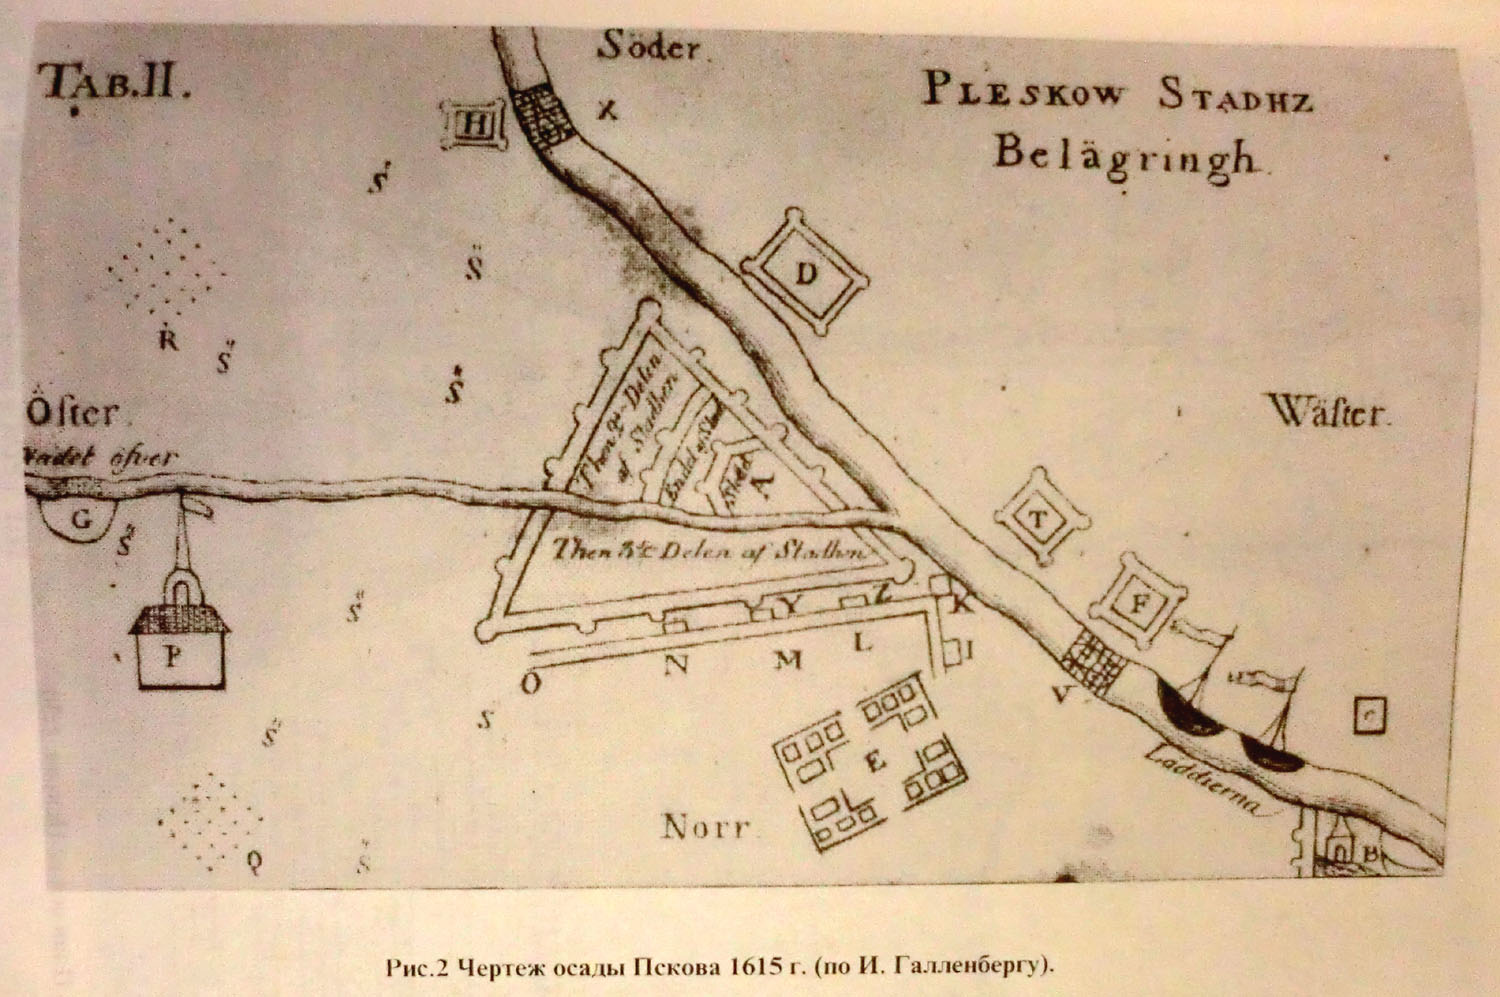 Чертеж осады Пскова 1615 г. (по И. Галленбергу)